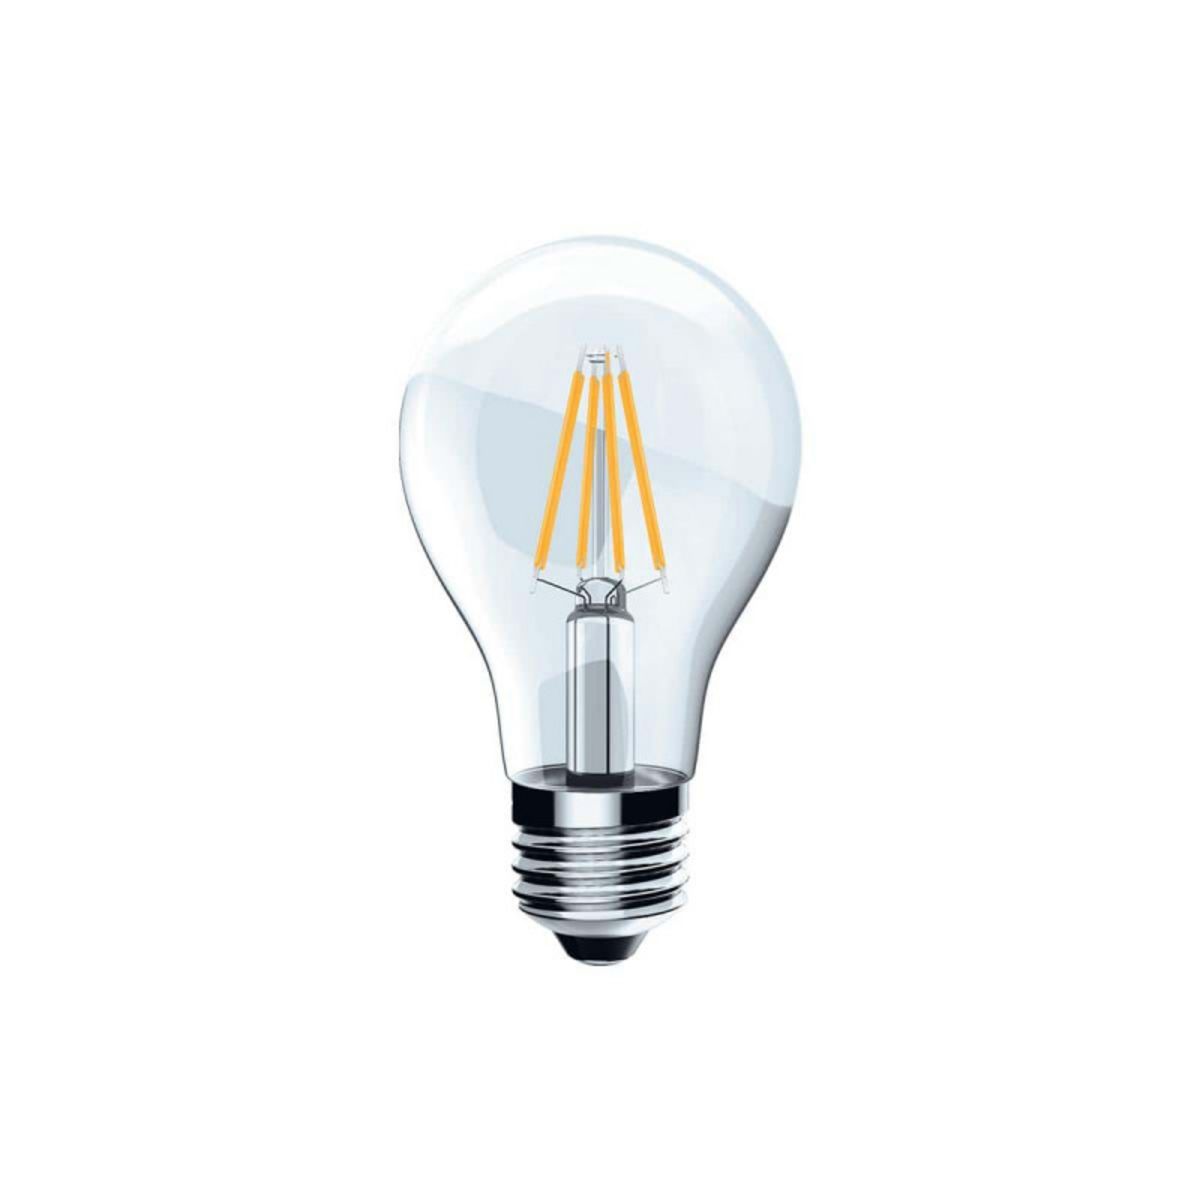  Ampoule LED Filament XXCELL Standard clair - E27 équivalent 75W